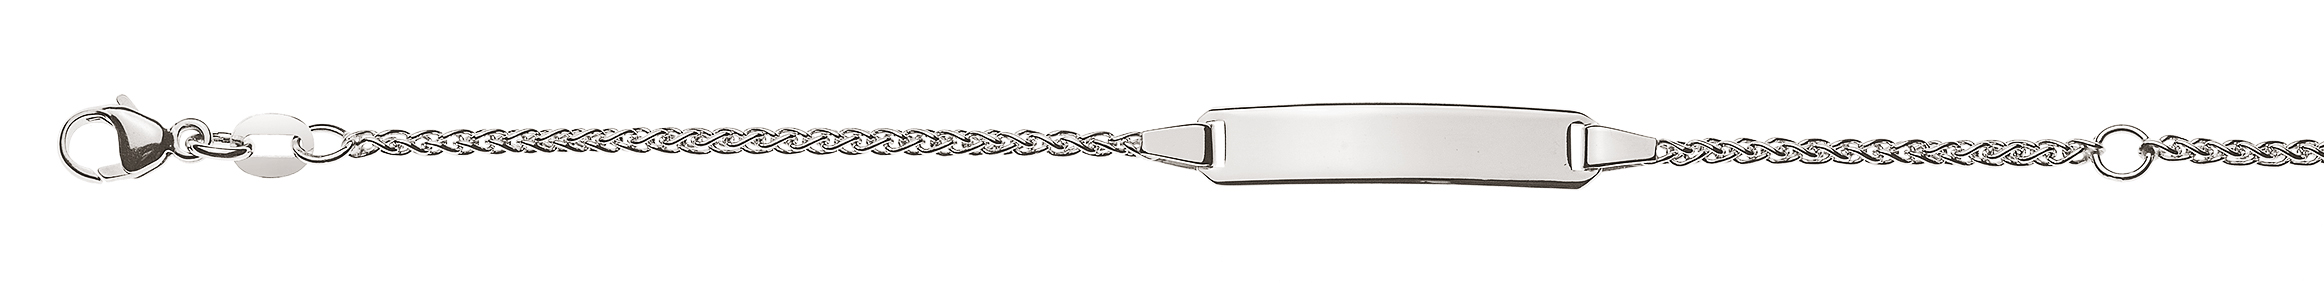 AURONOS Élégance ID-Bracelet 14k white gold braided chain 16cm